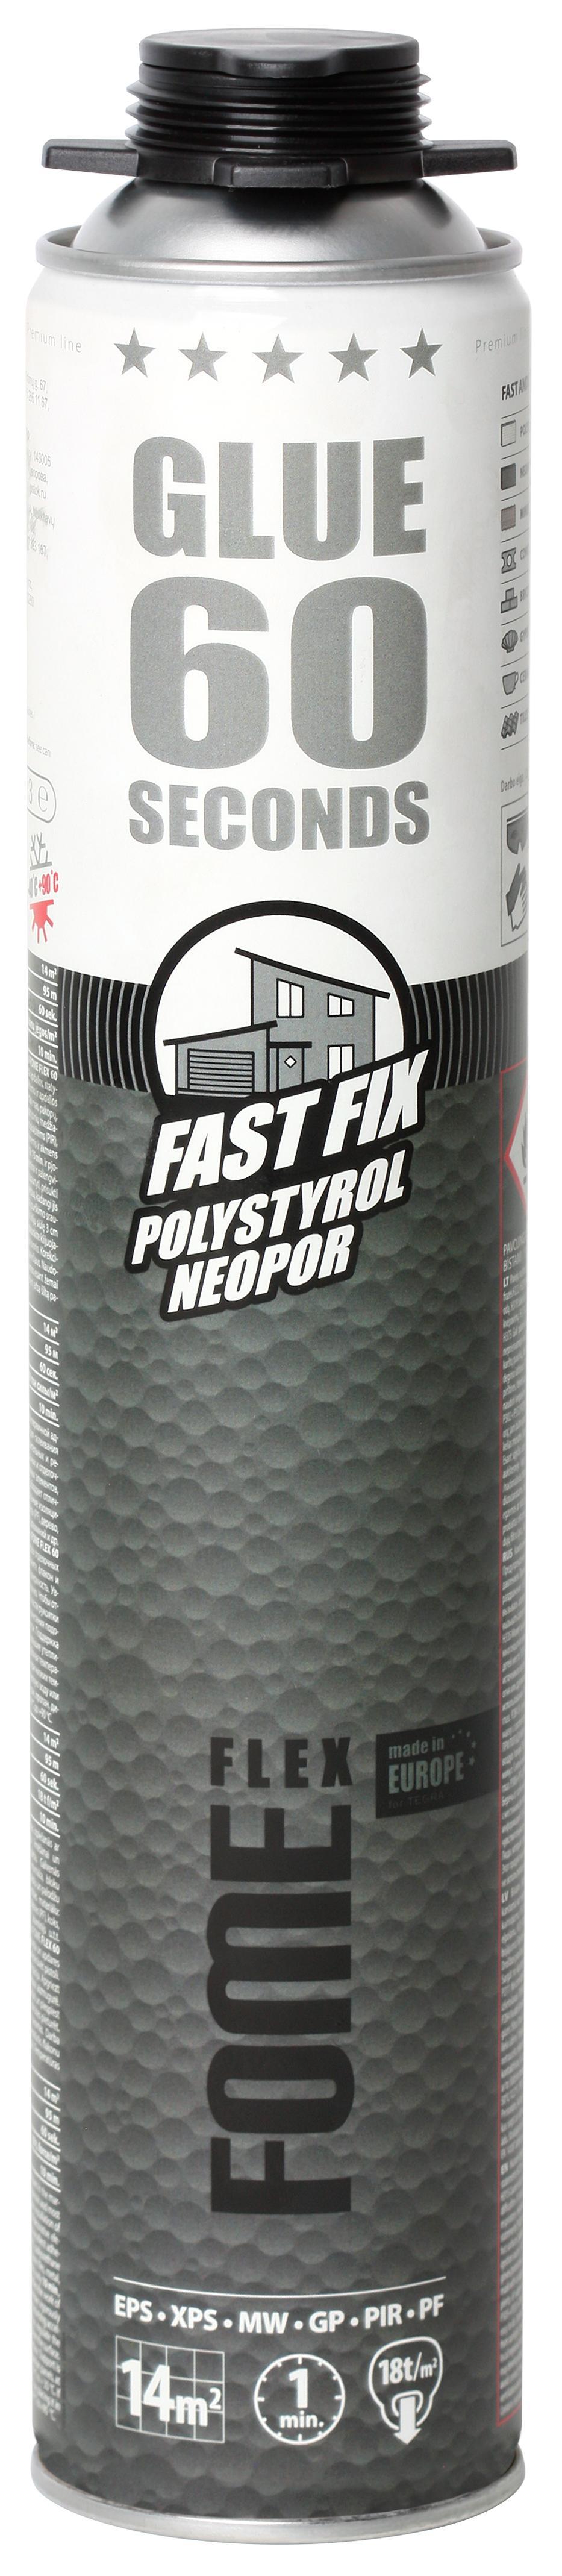 Флекс 60. Пена -клей fome Flex 60 sec. Fast Fix Adhesive Foam 850мл. Герметик силиконовый высокотемпературный fome Flex Thermo 300 мл. Пена fome Flex Mega. Клей пена 60 секунд.